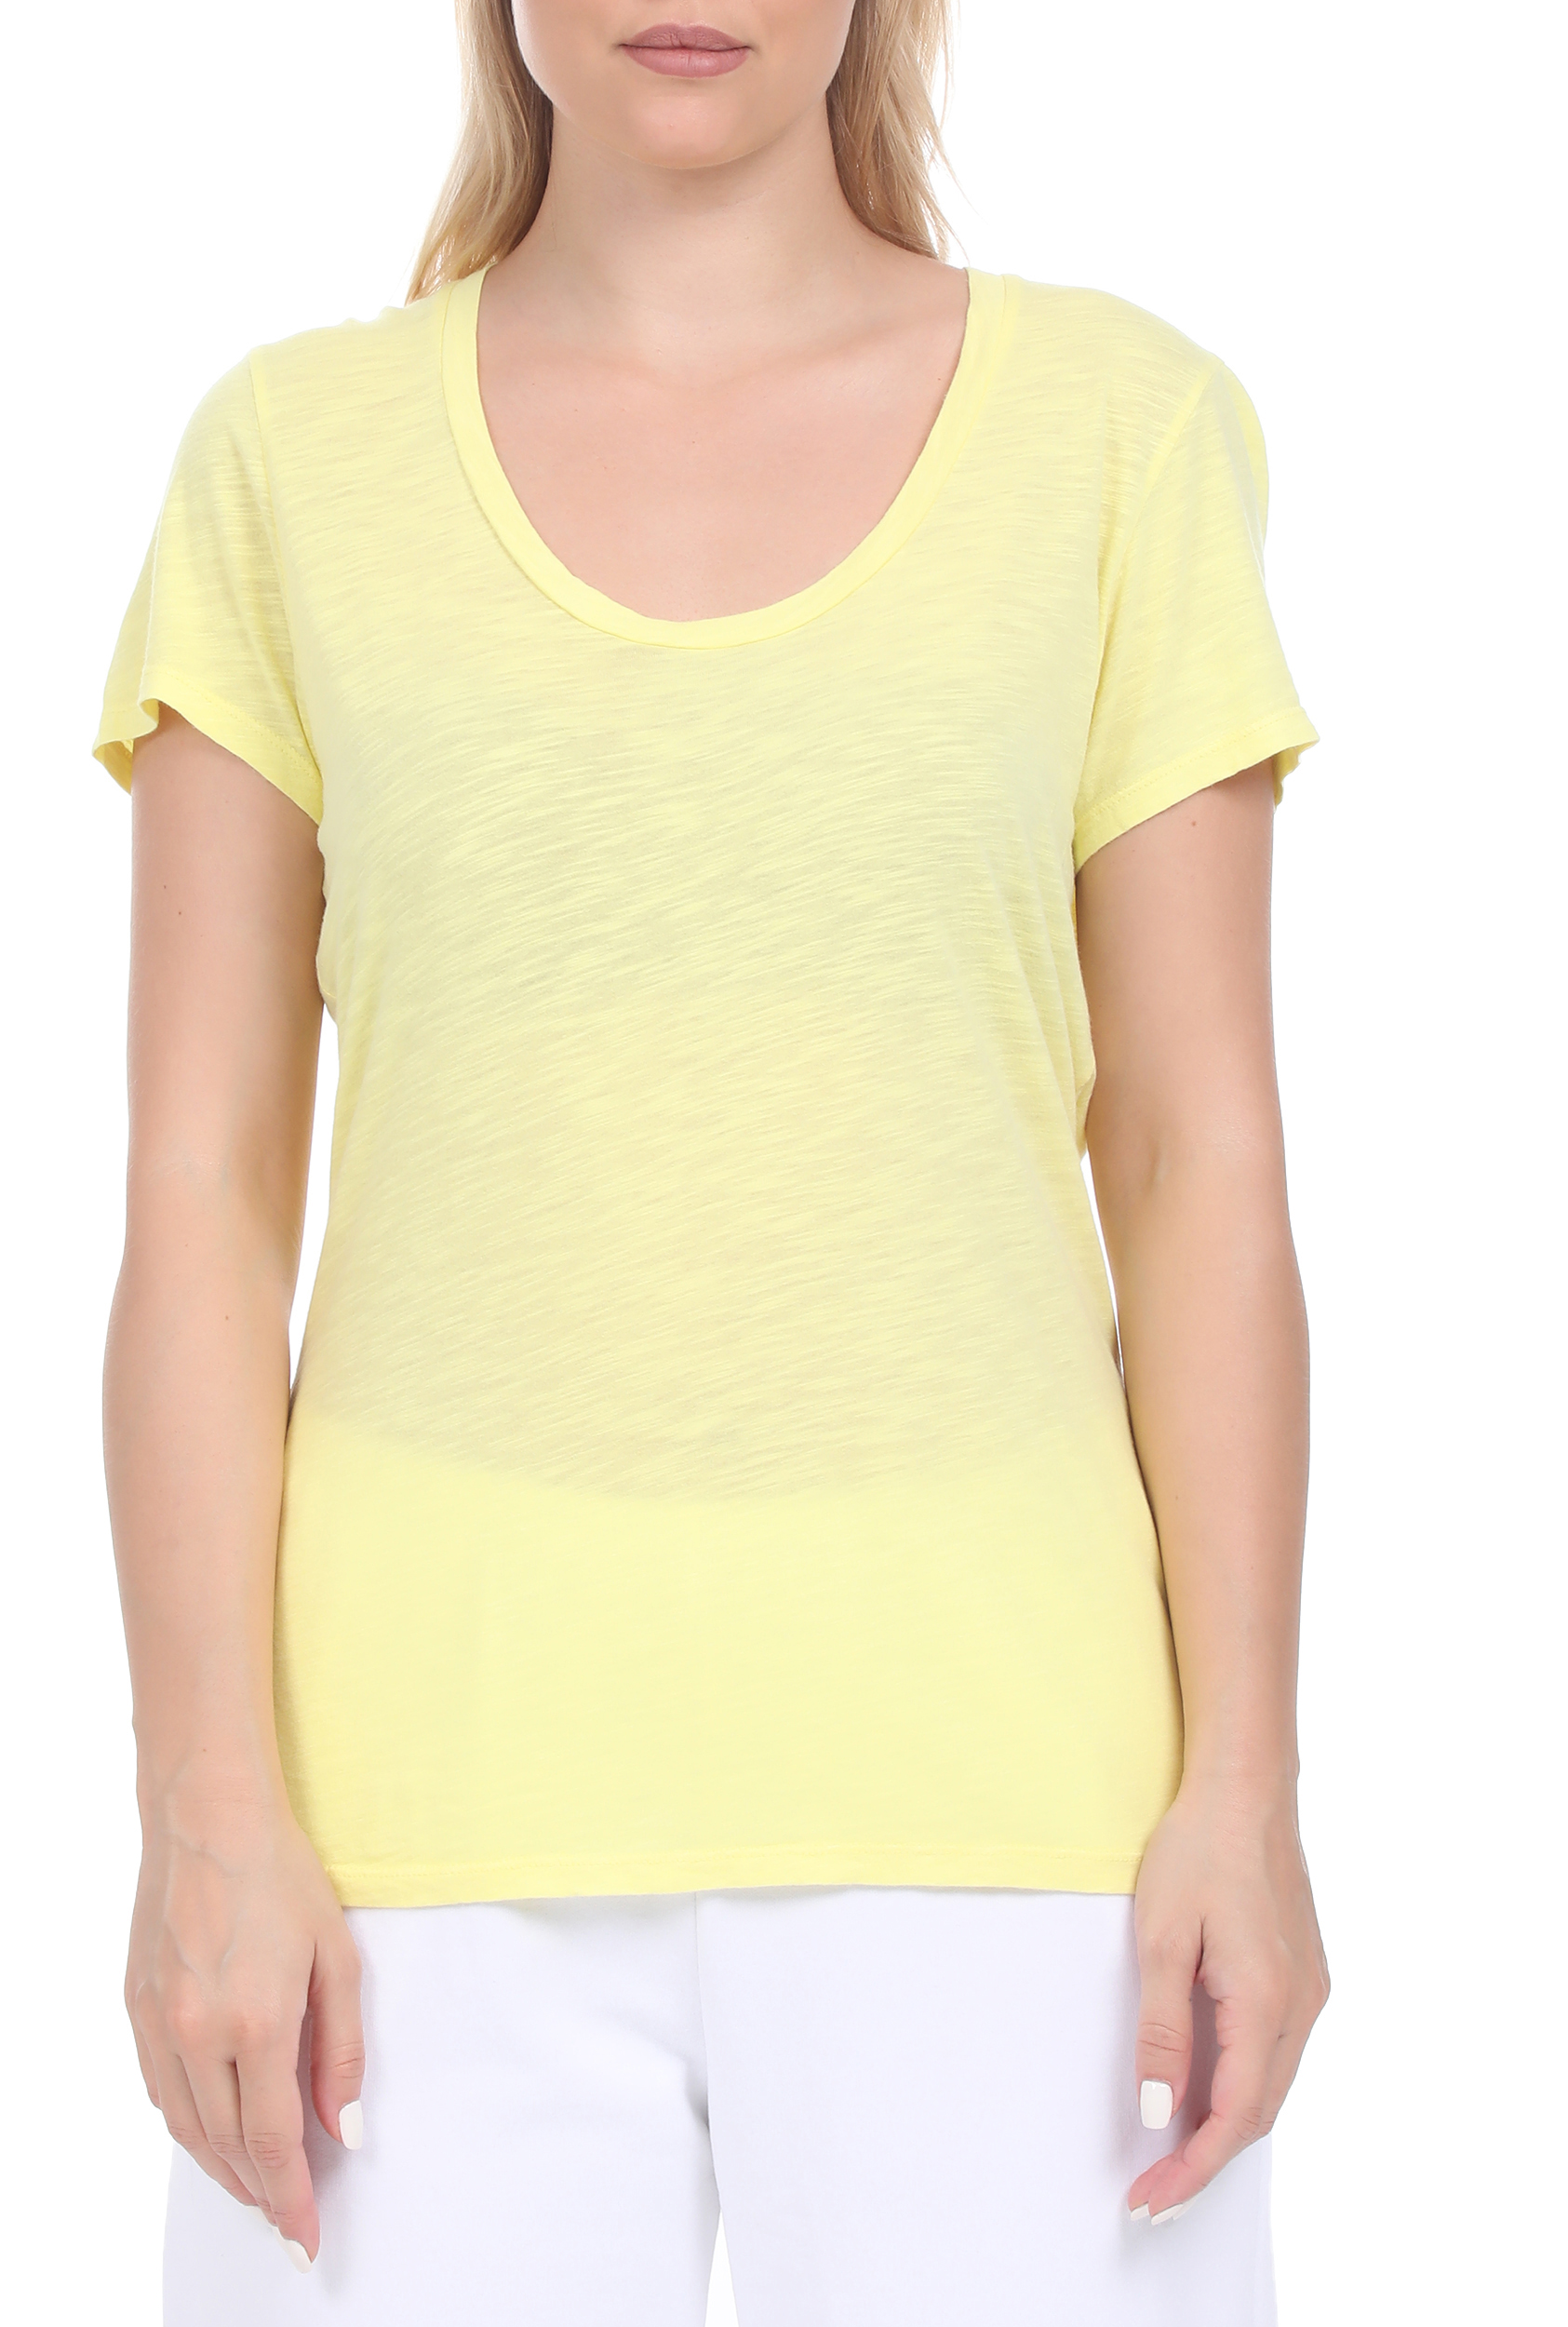 Γυναικεία/Ρούχα/Μπλούζες/Κοντομάνικες AMERICAN VINTAGE - Γυναικεία μπλούζα AMERICAN VINTAGE κίτρινη